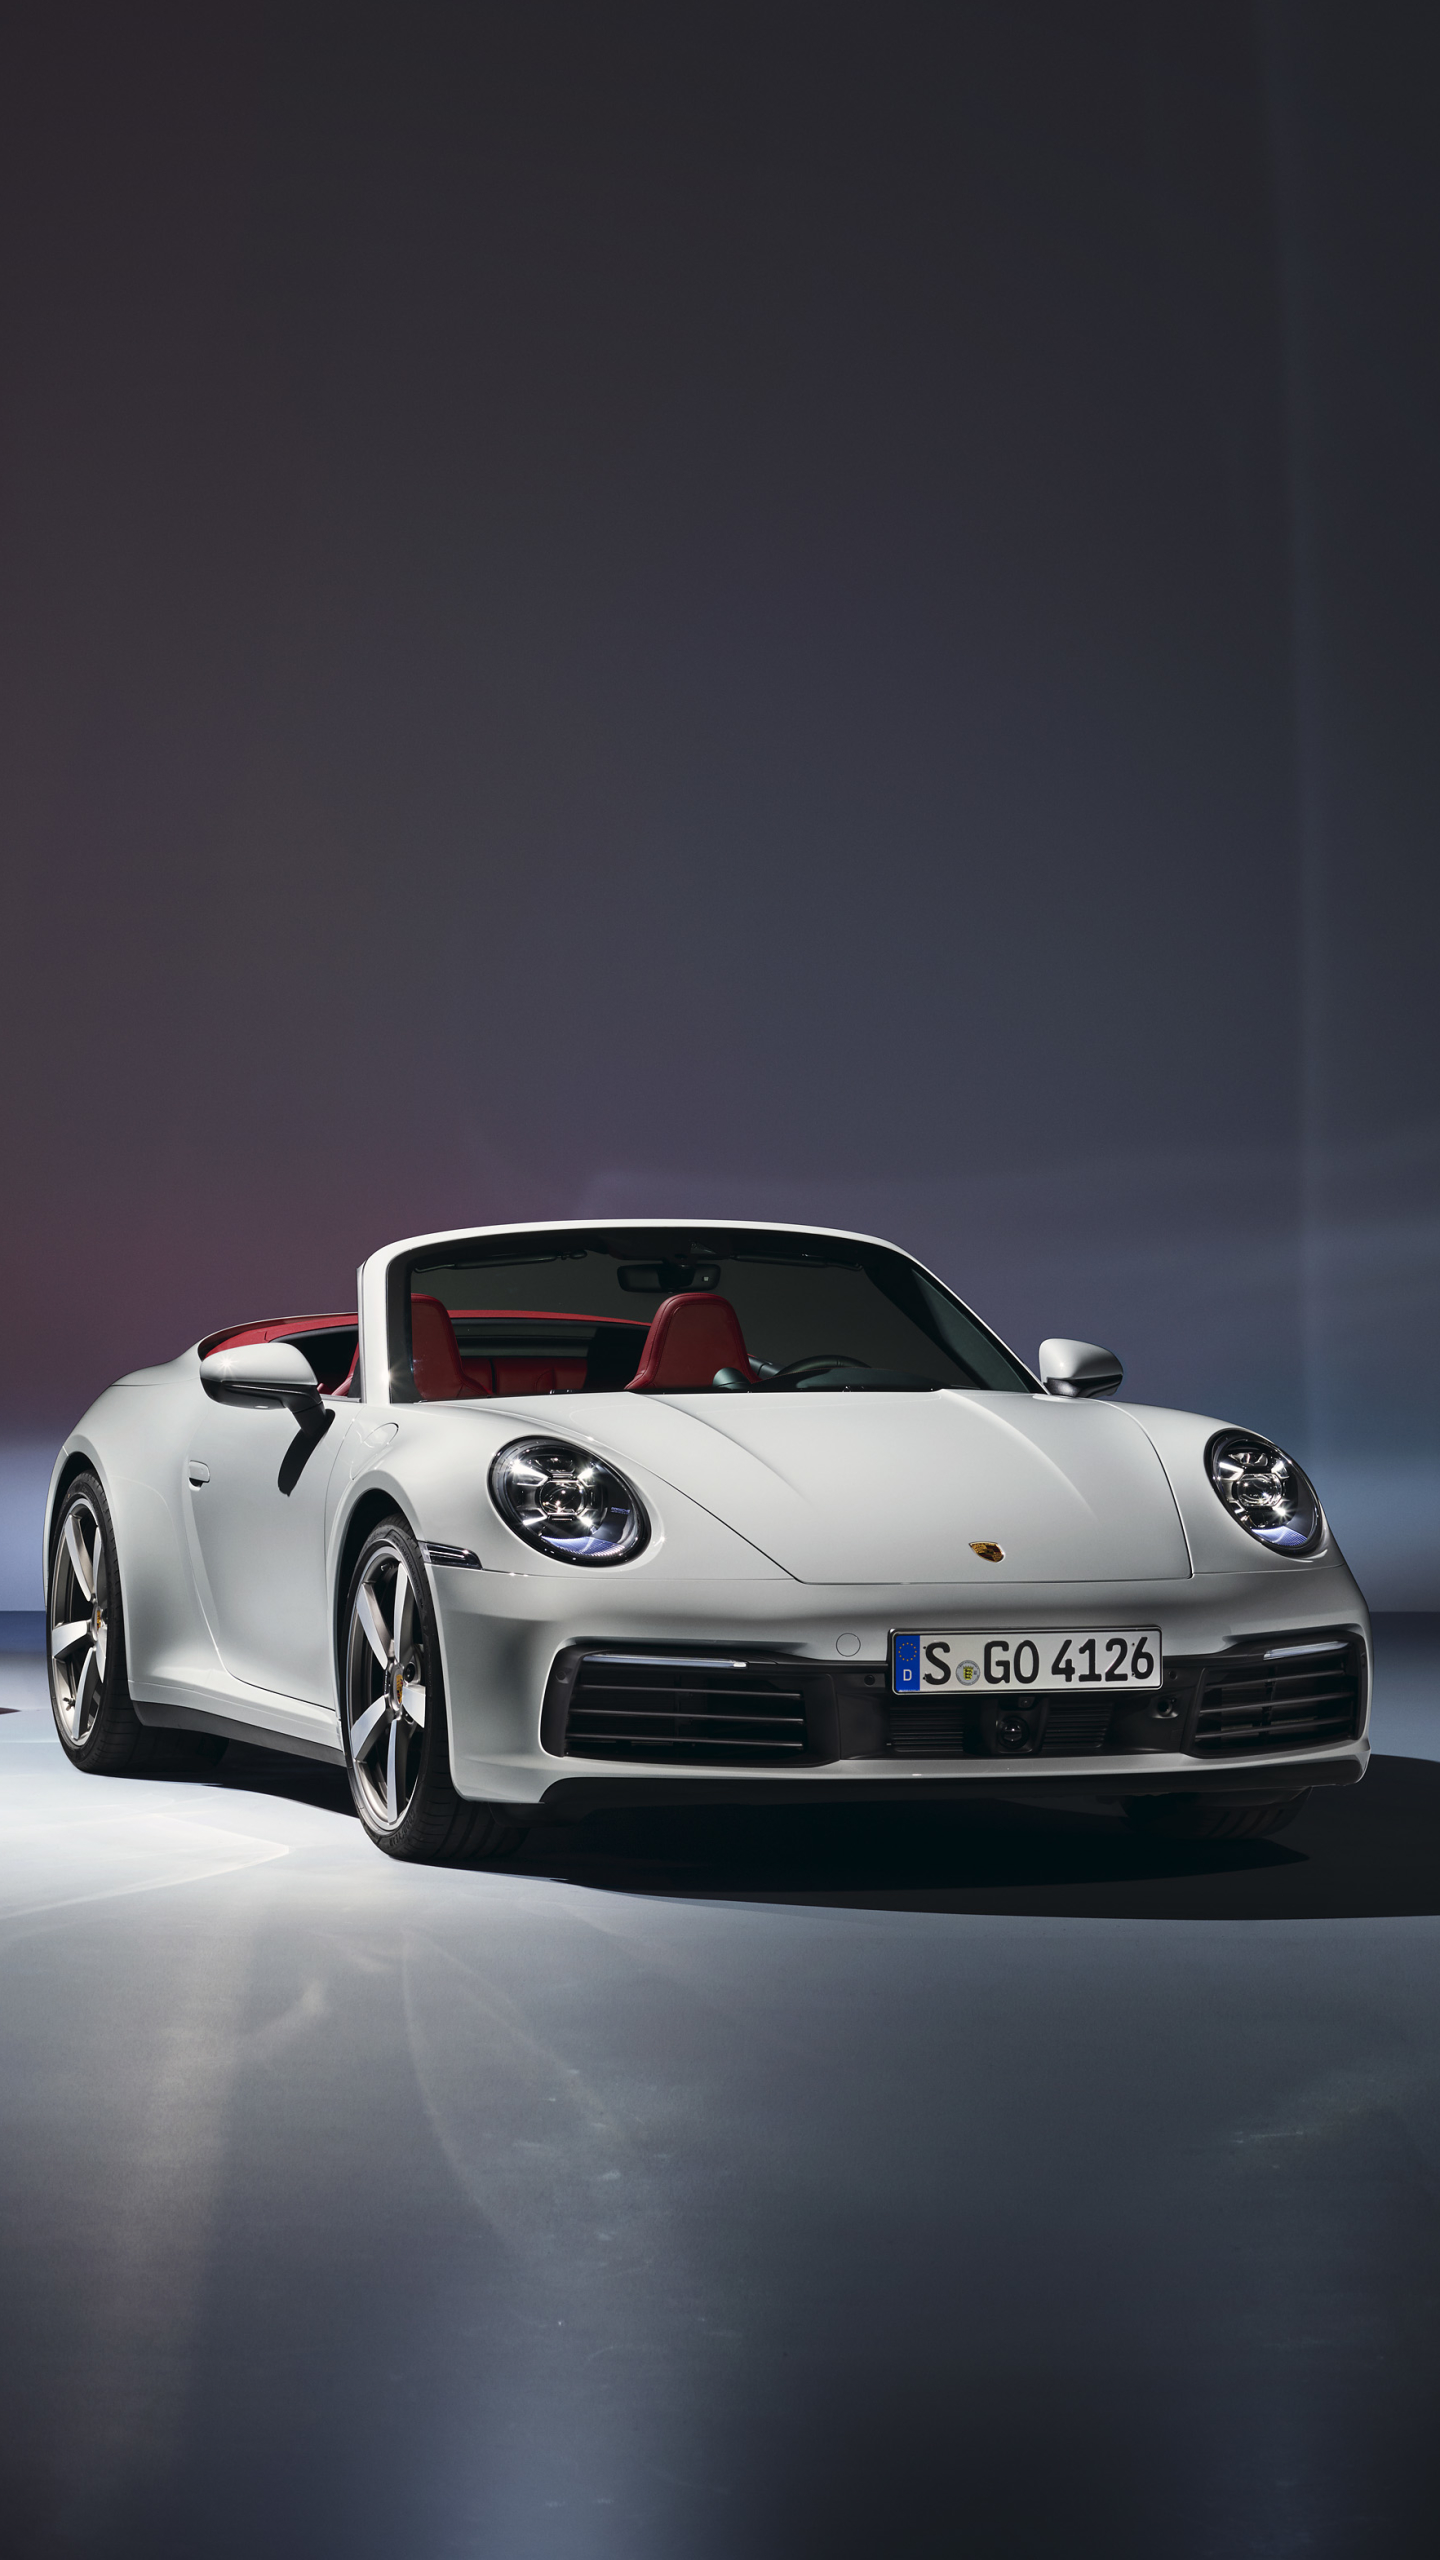 Descarga gratuita de fondo de pantalla para móvil de Porsche, Coche, Porsche 911, Vehículo, Vehículos, Porsche 911 Carrera, Coche Blanco.